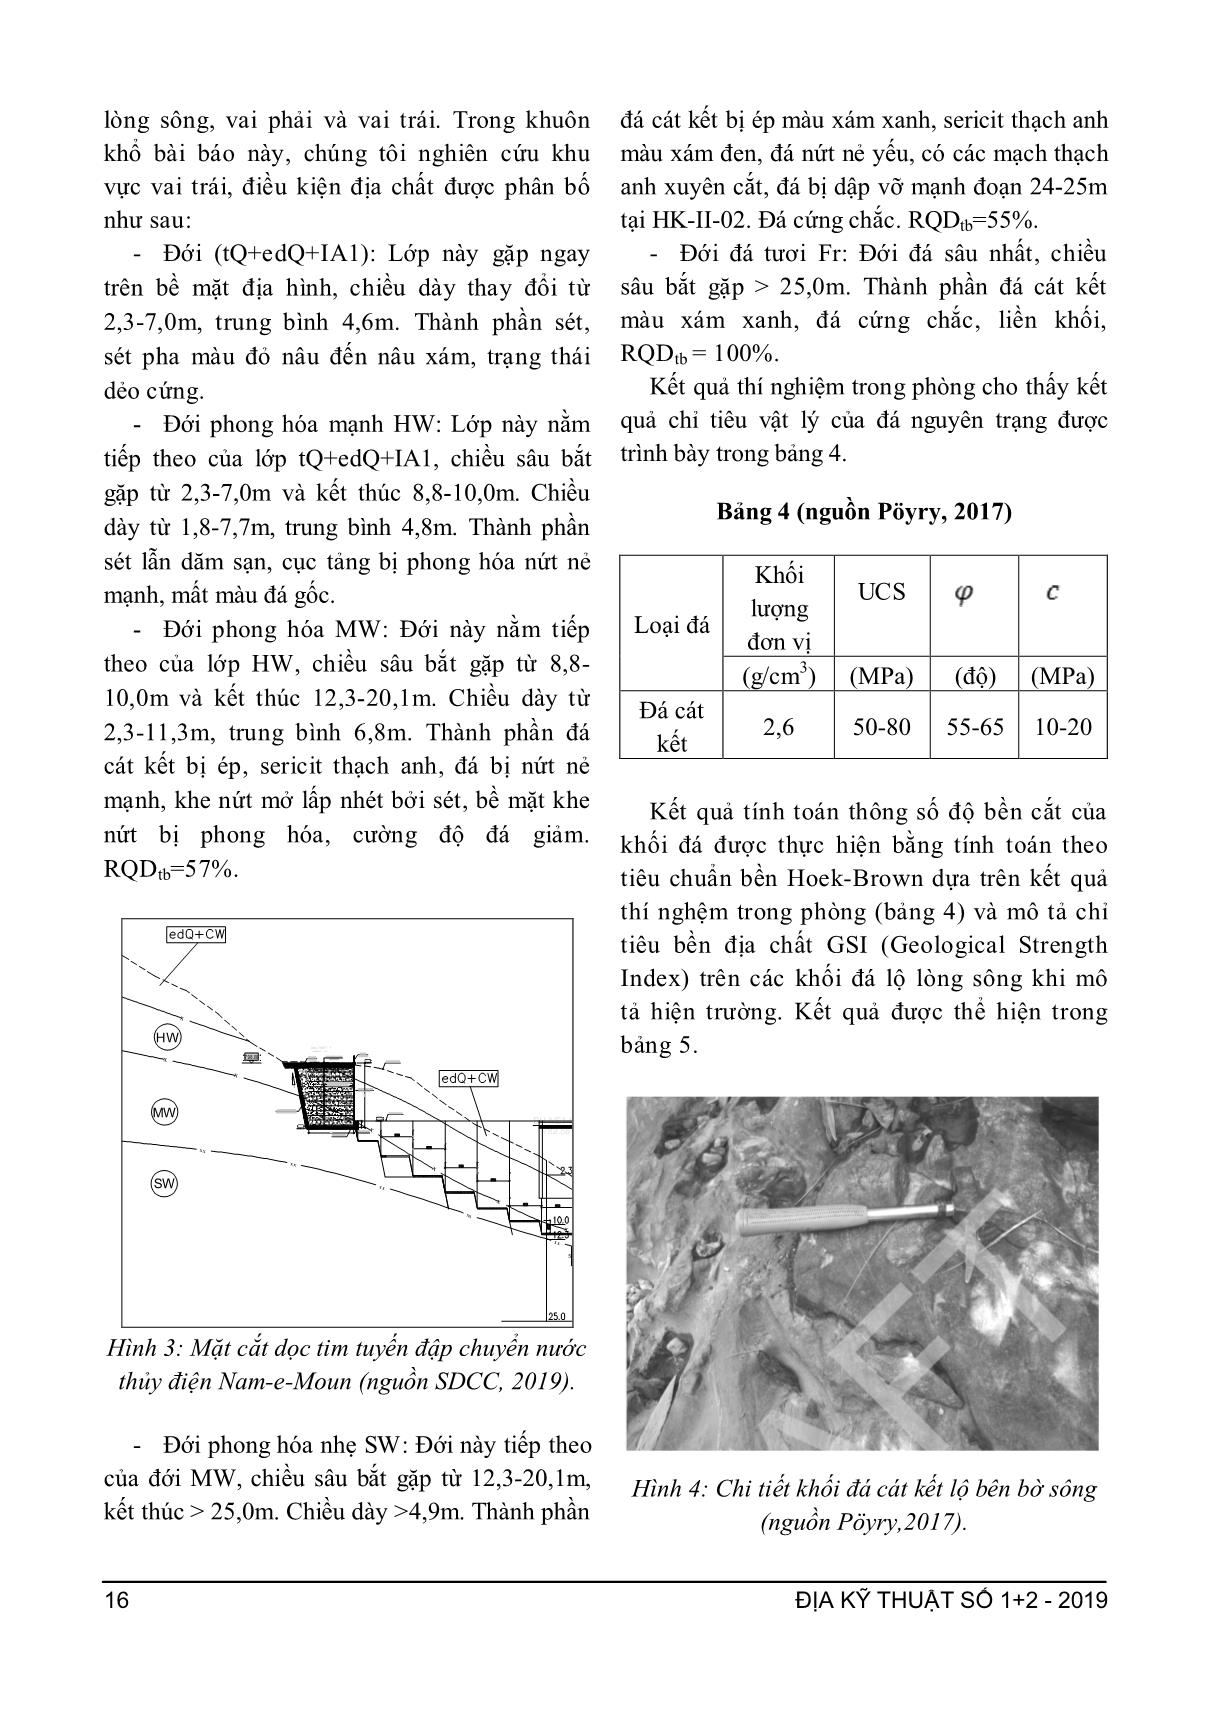 Xác định cường độ lực liên kết của khối đá theo các thông số độ bền của mẫu đá và chỉ số khối đá RMR trang 5